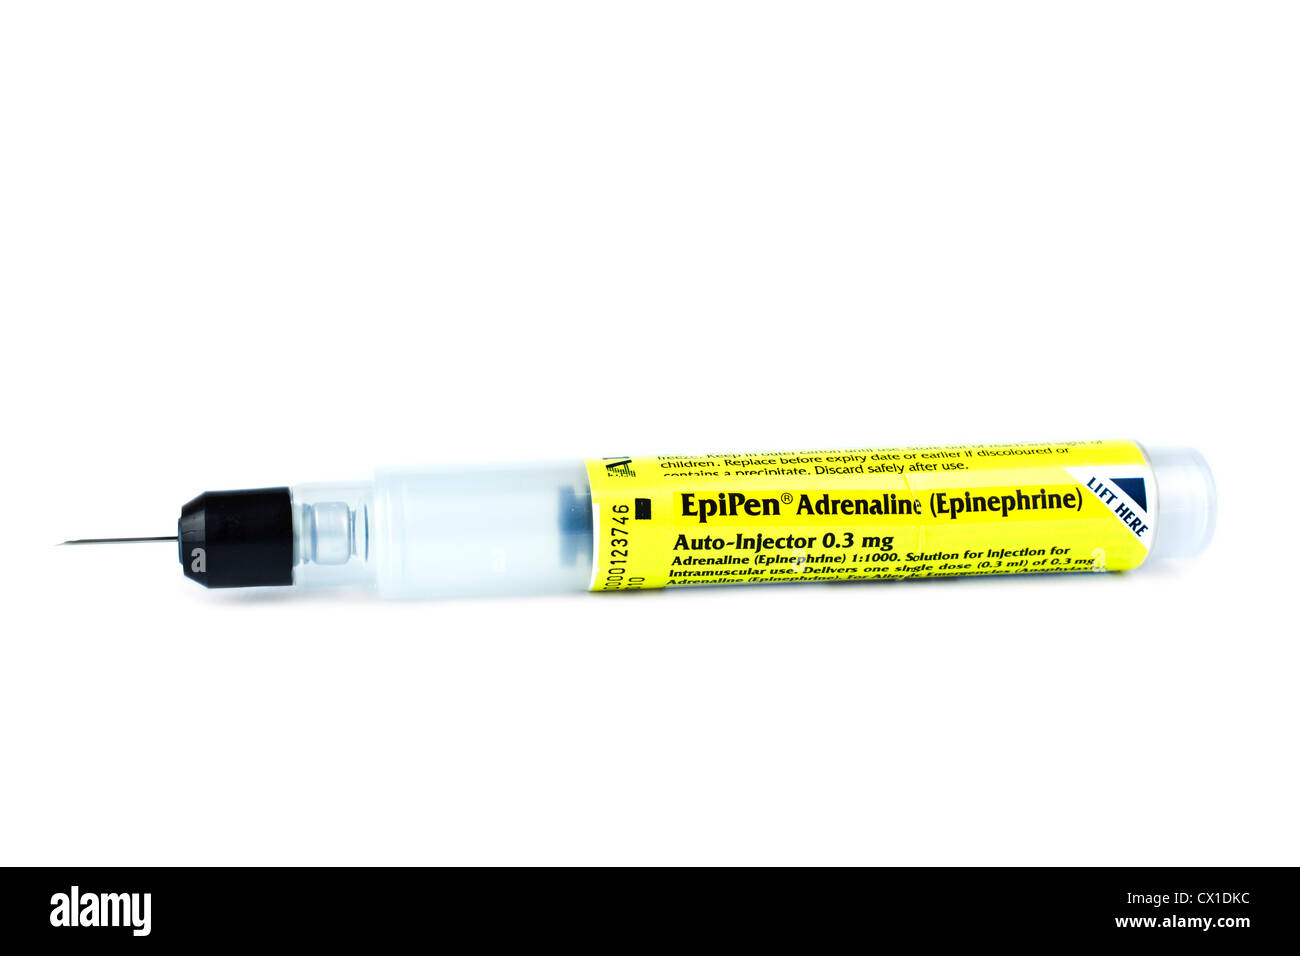 L'épinéphrine adrénaline Epipen stylo injecteur d'urgence pour  l'anaphylaxie traitement des réactions allergiques Photo Stock - Alamy